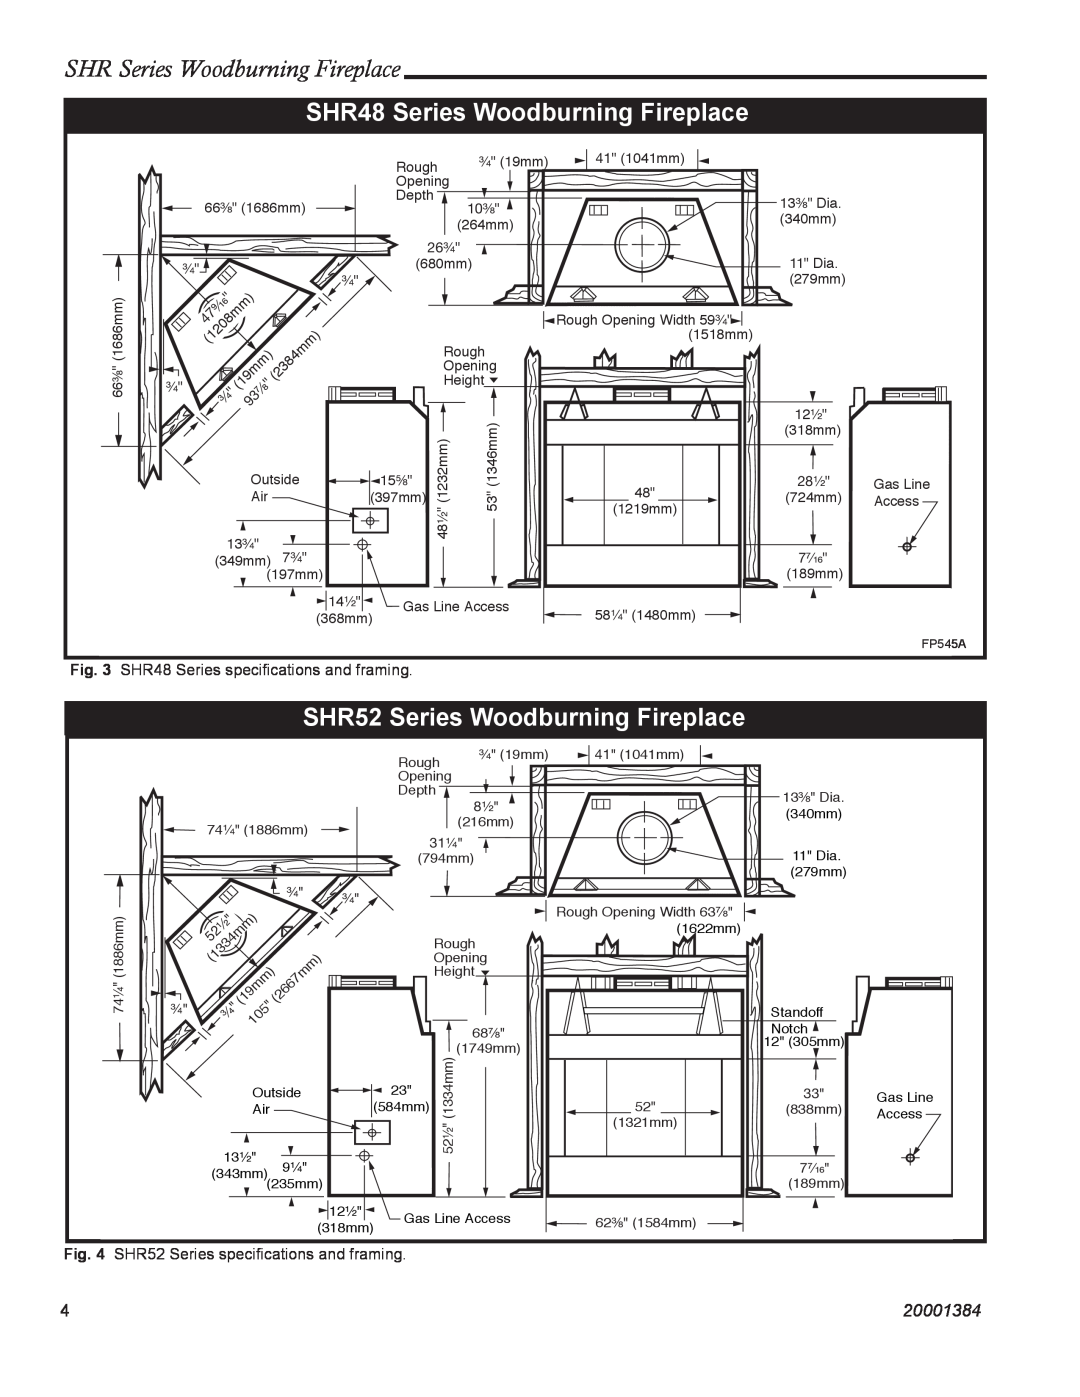 CFM Corporation SHR42A, SHR36 manual SHR48 Series Woodburning Fireplace, SHR52 Series Woodburning Fireplace, 20001384 